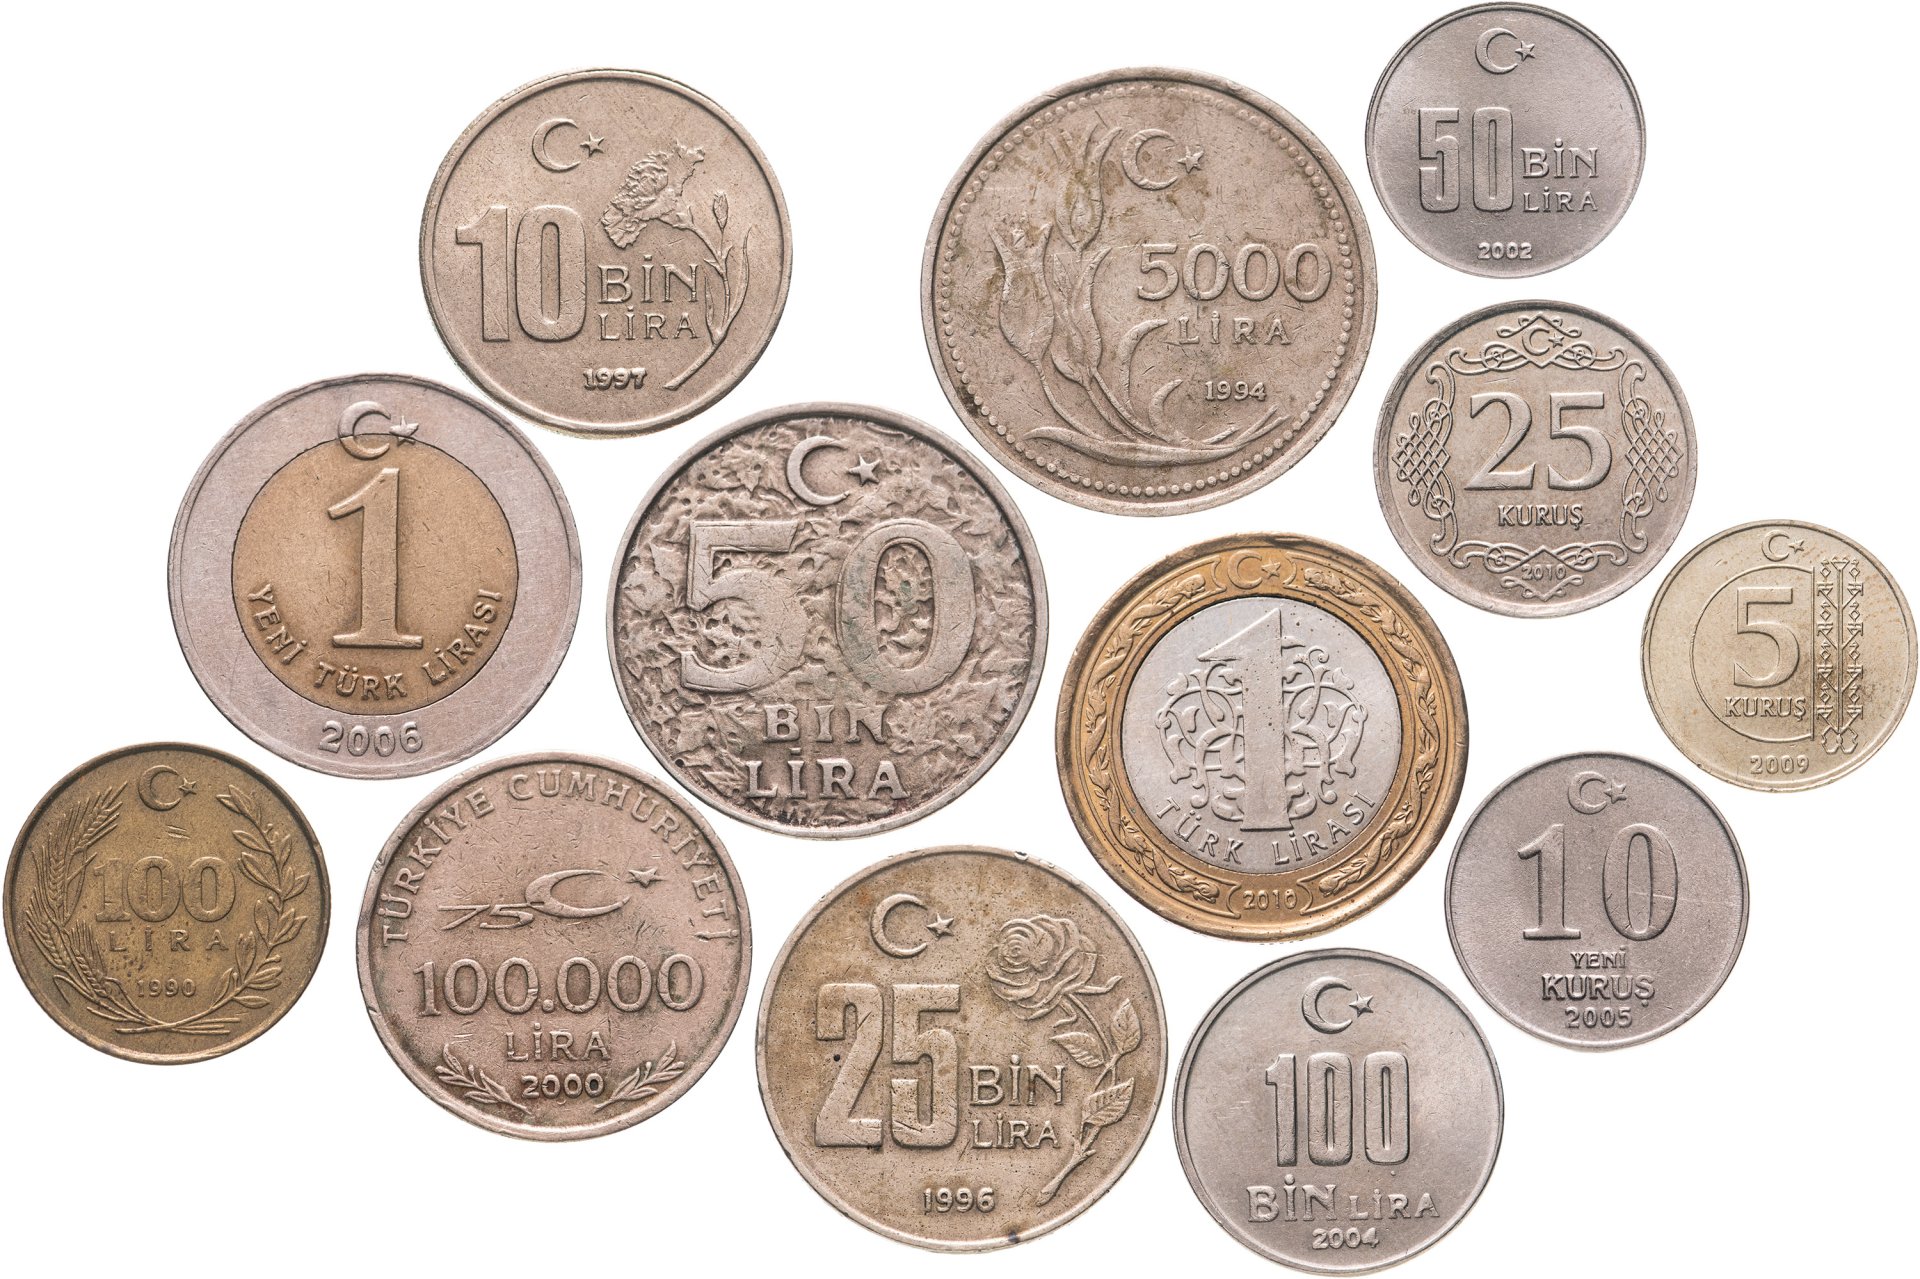 Сколько рублей в 1 лире. 100 Курушей в рублях. 5 Турецких лир в рублях. 20 Куруш Турция золото. 100 000 Лир в рублях.